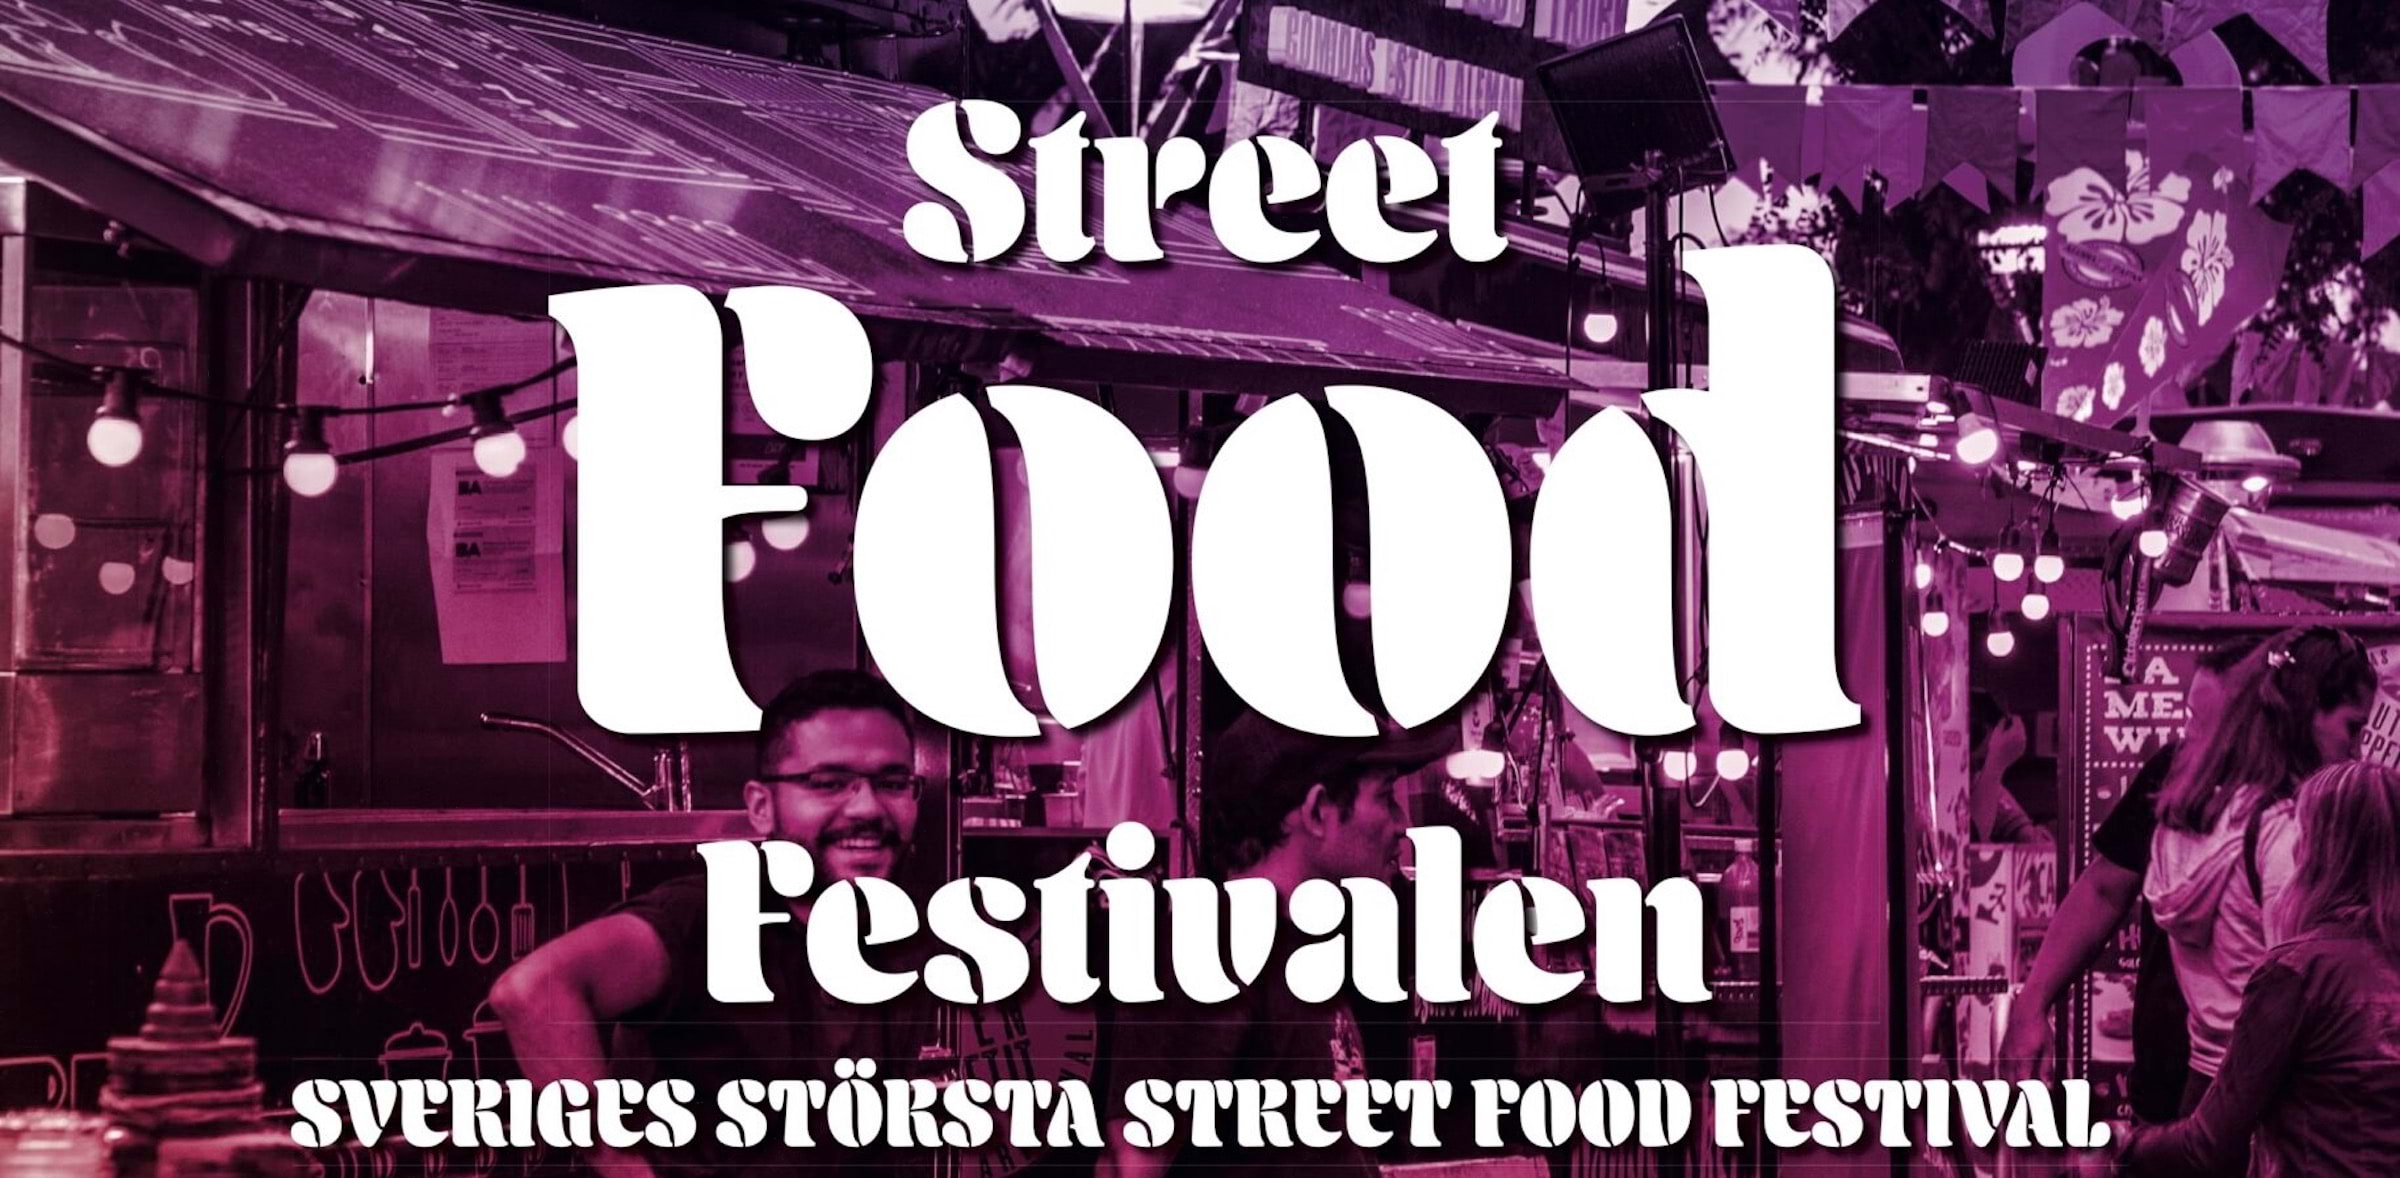 Streetfoodfestivalen kommer till Göteborg. Foto: pressbild